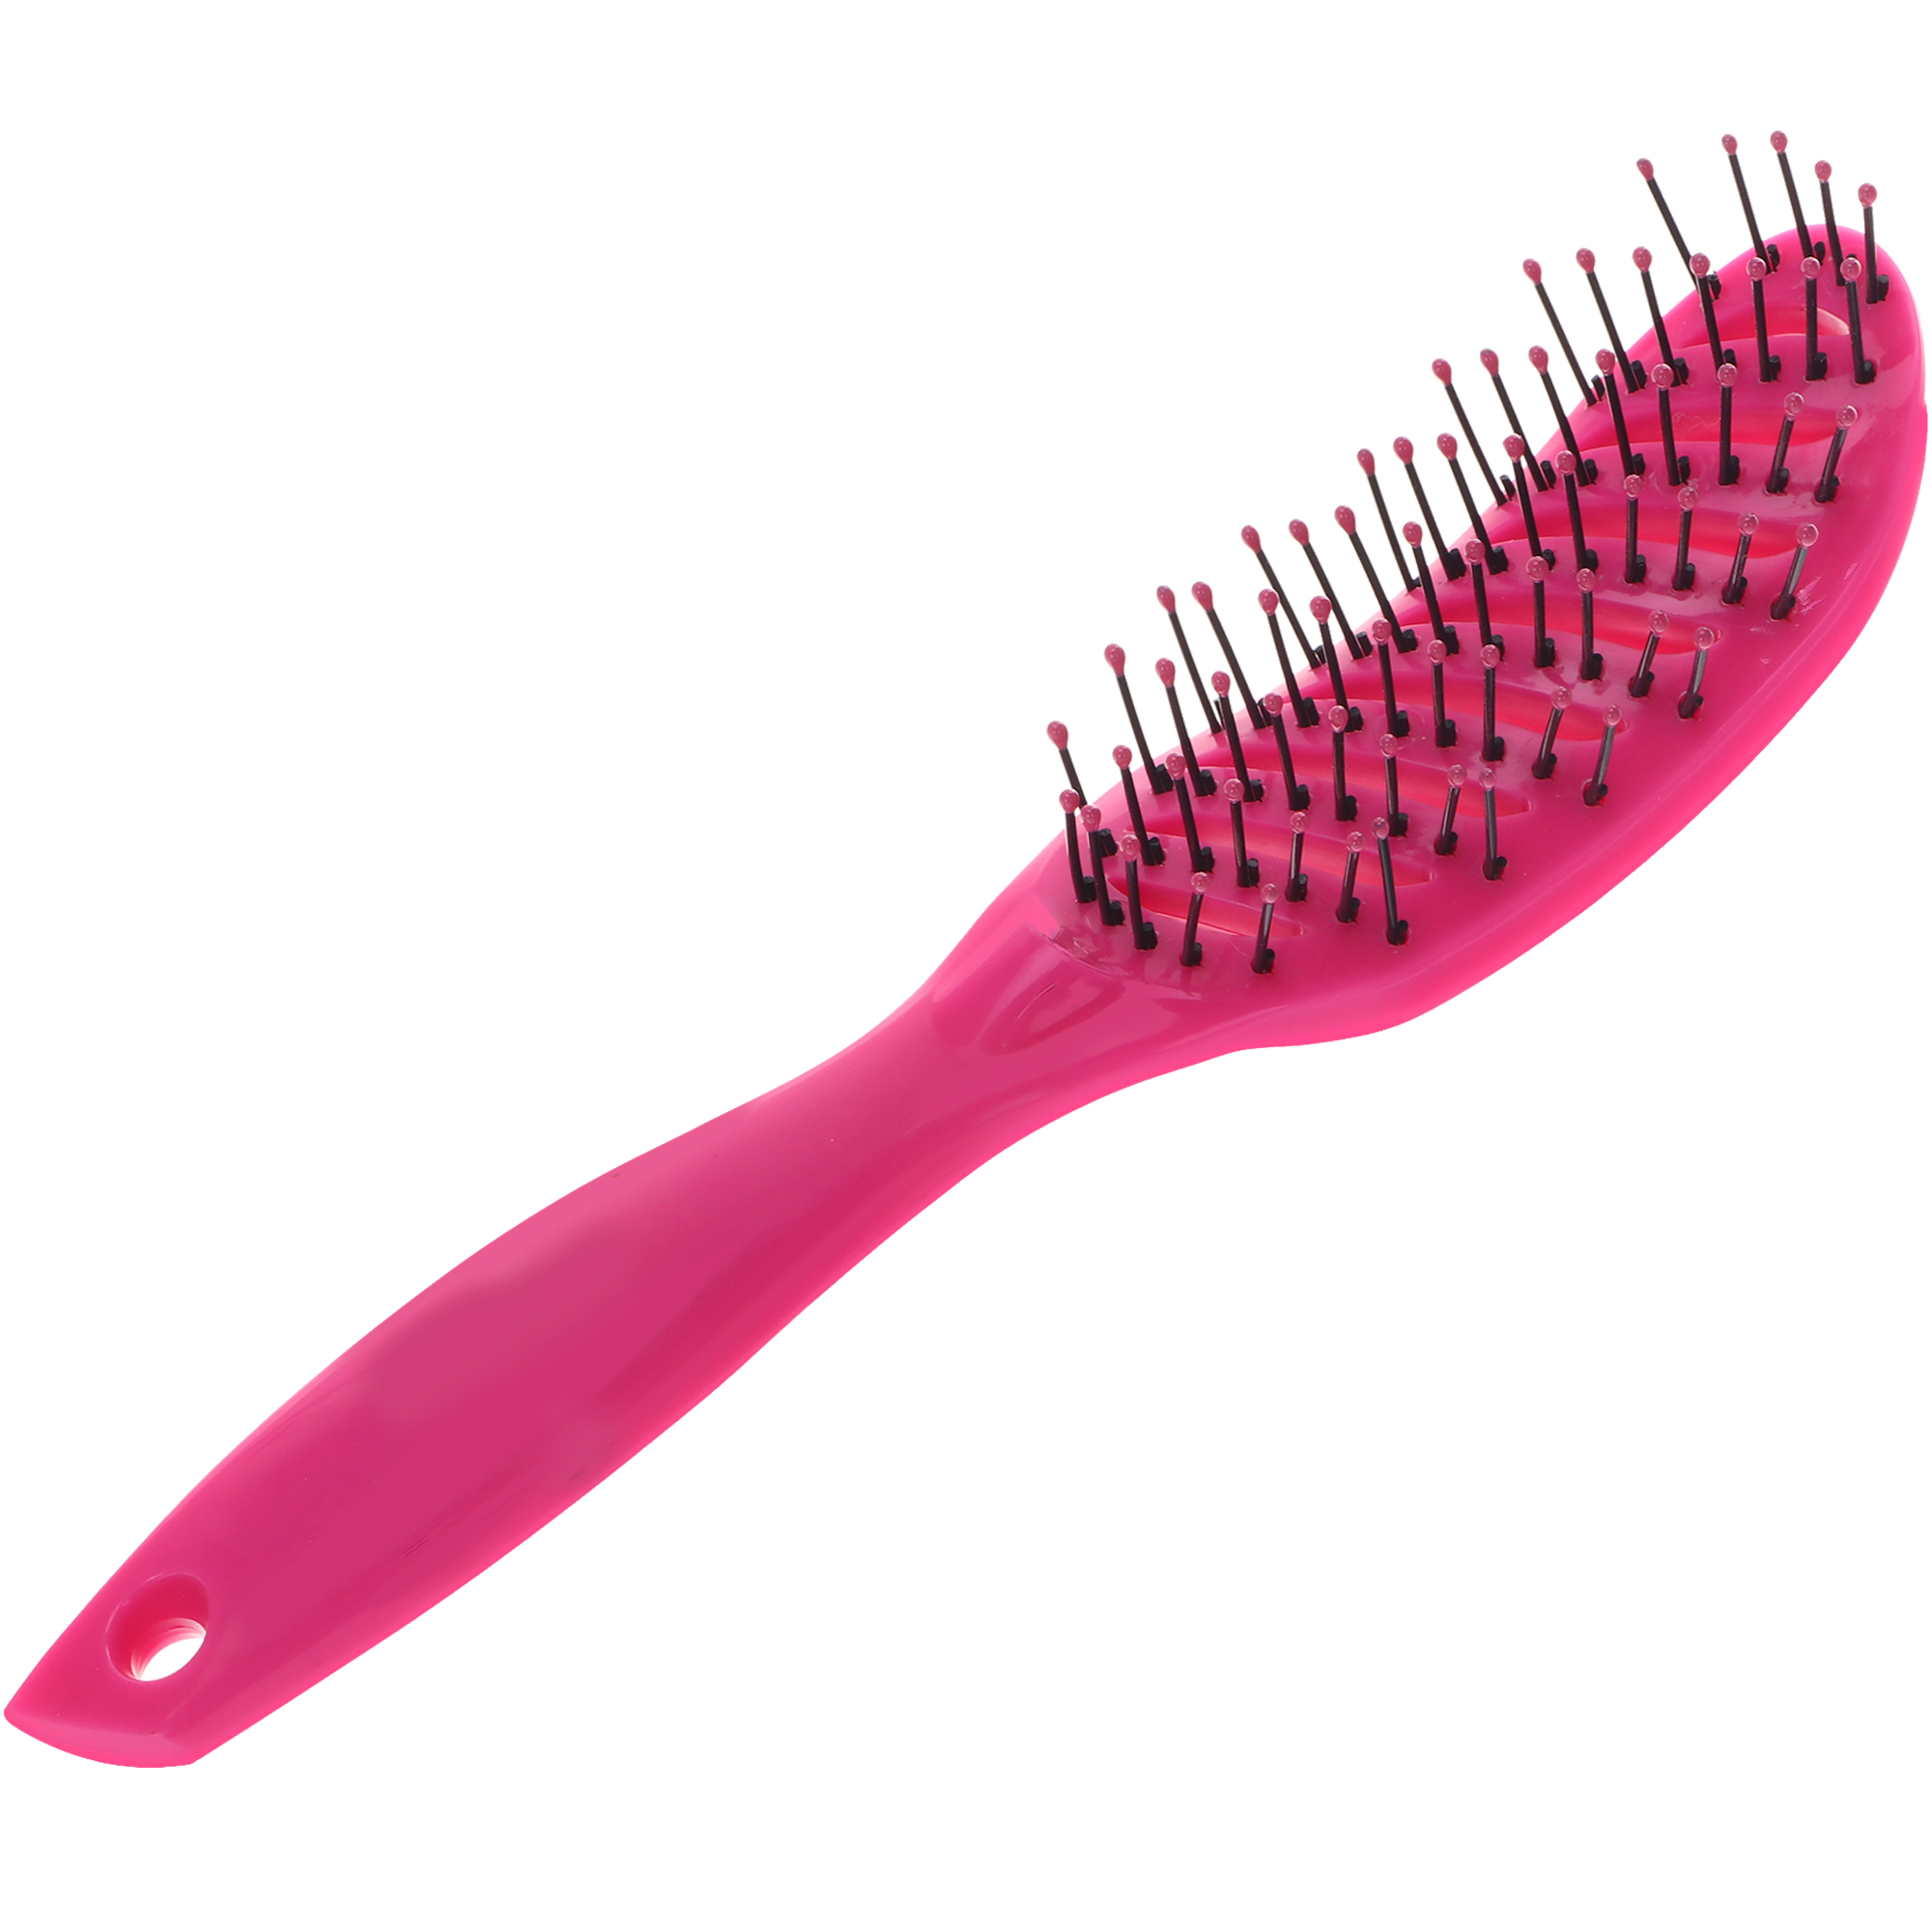 Расческа Nice View каркасная для укладки волос с пластиковыми зубьями L-23 розовая светящаяся резинка для волос розовая winx